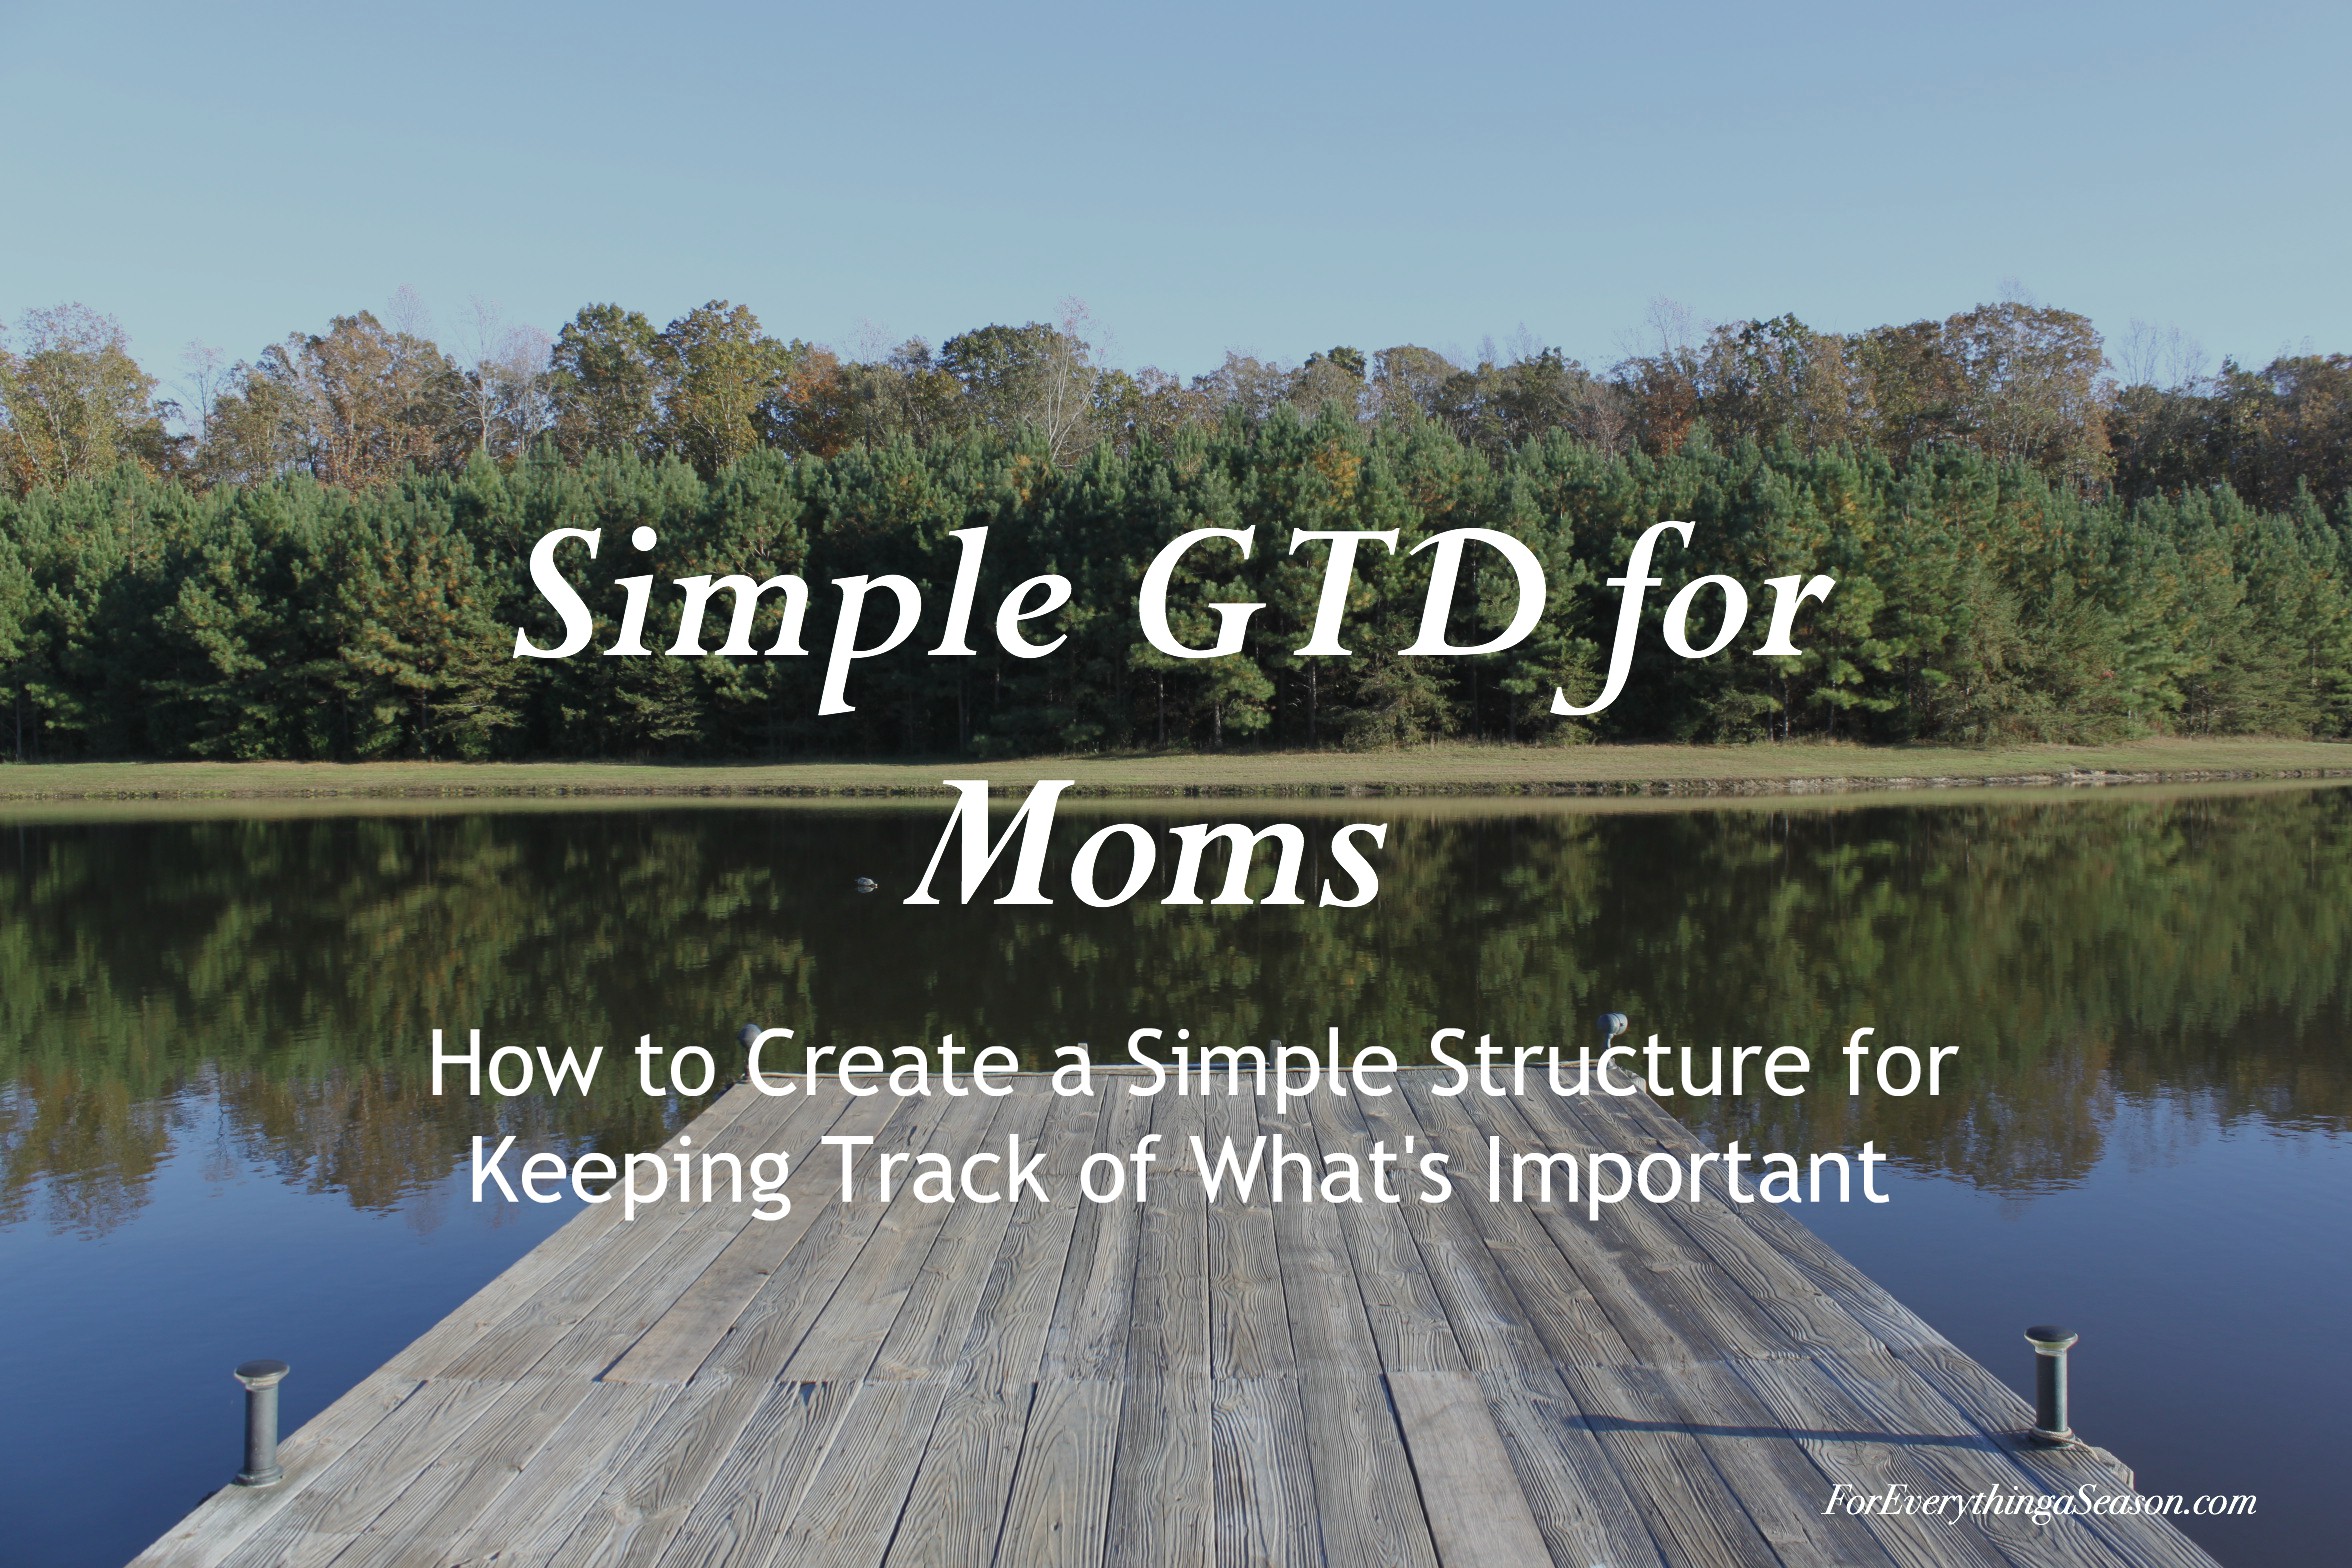 GTD for Moms